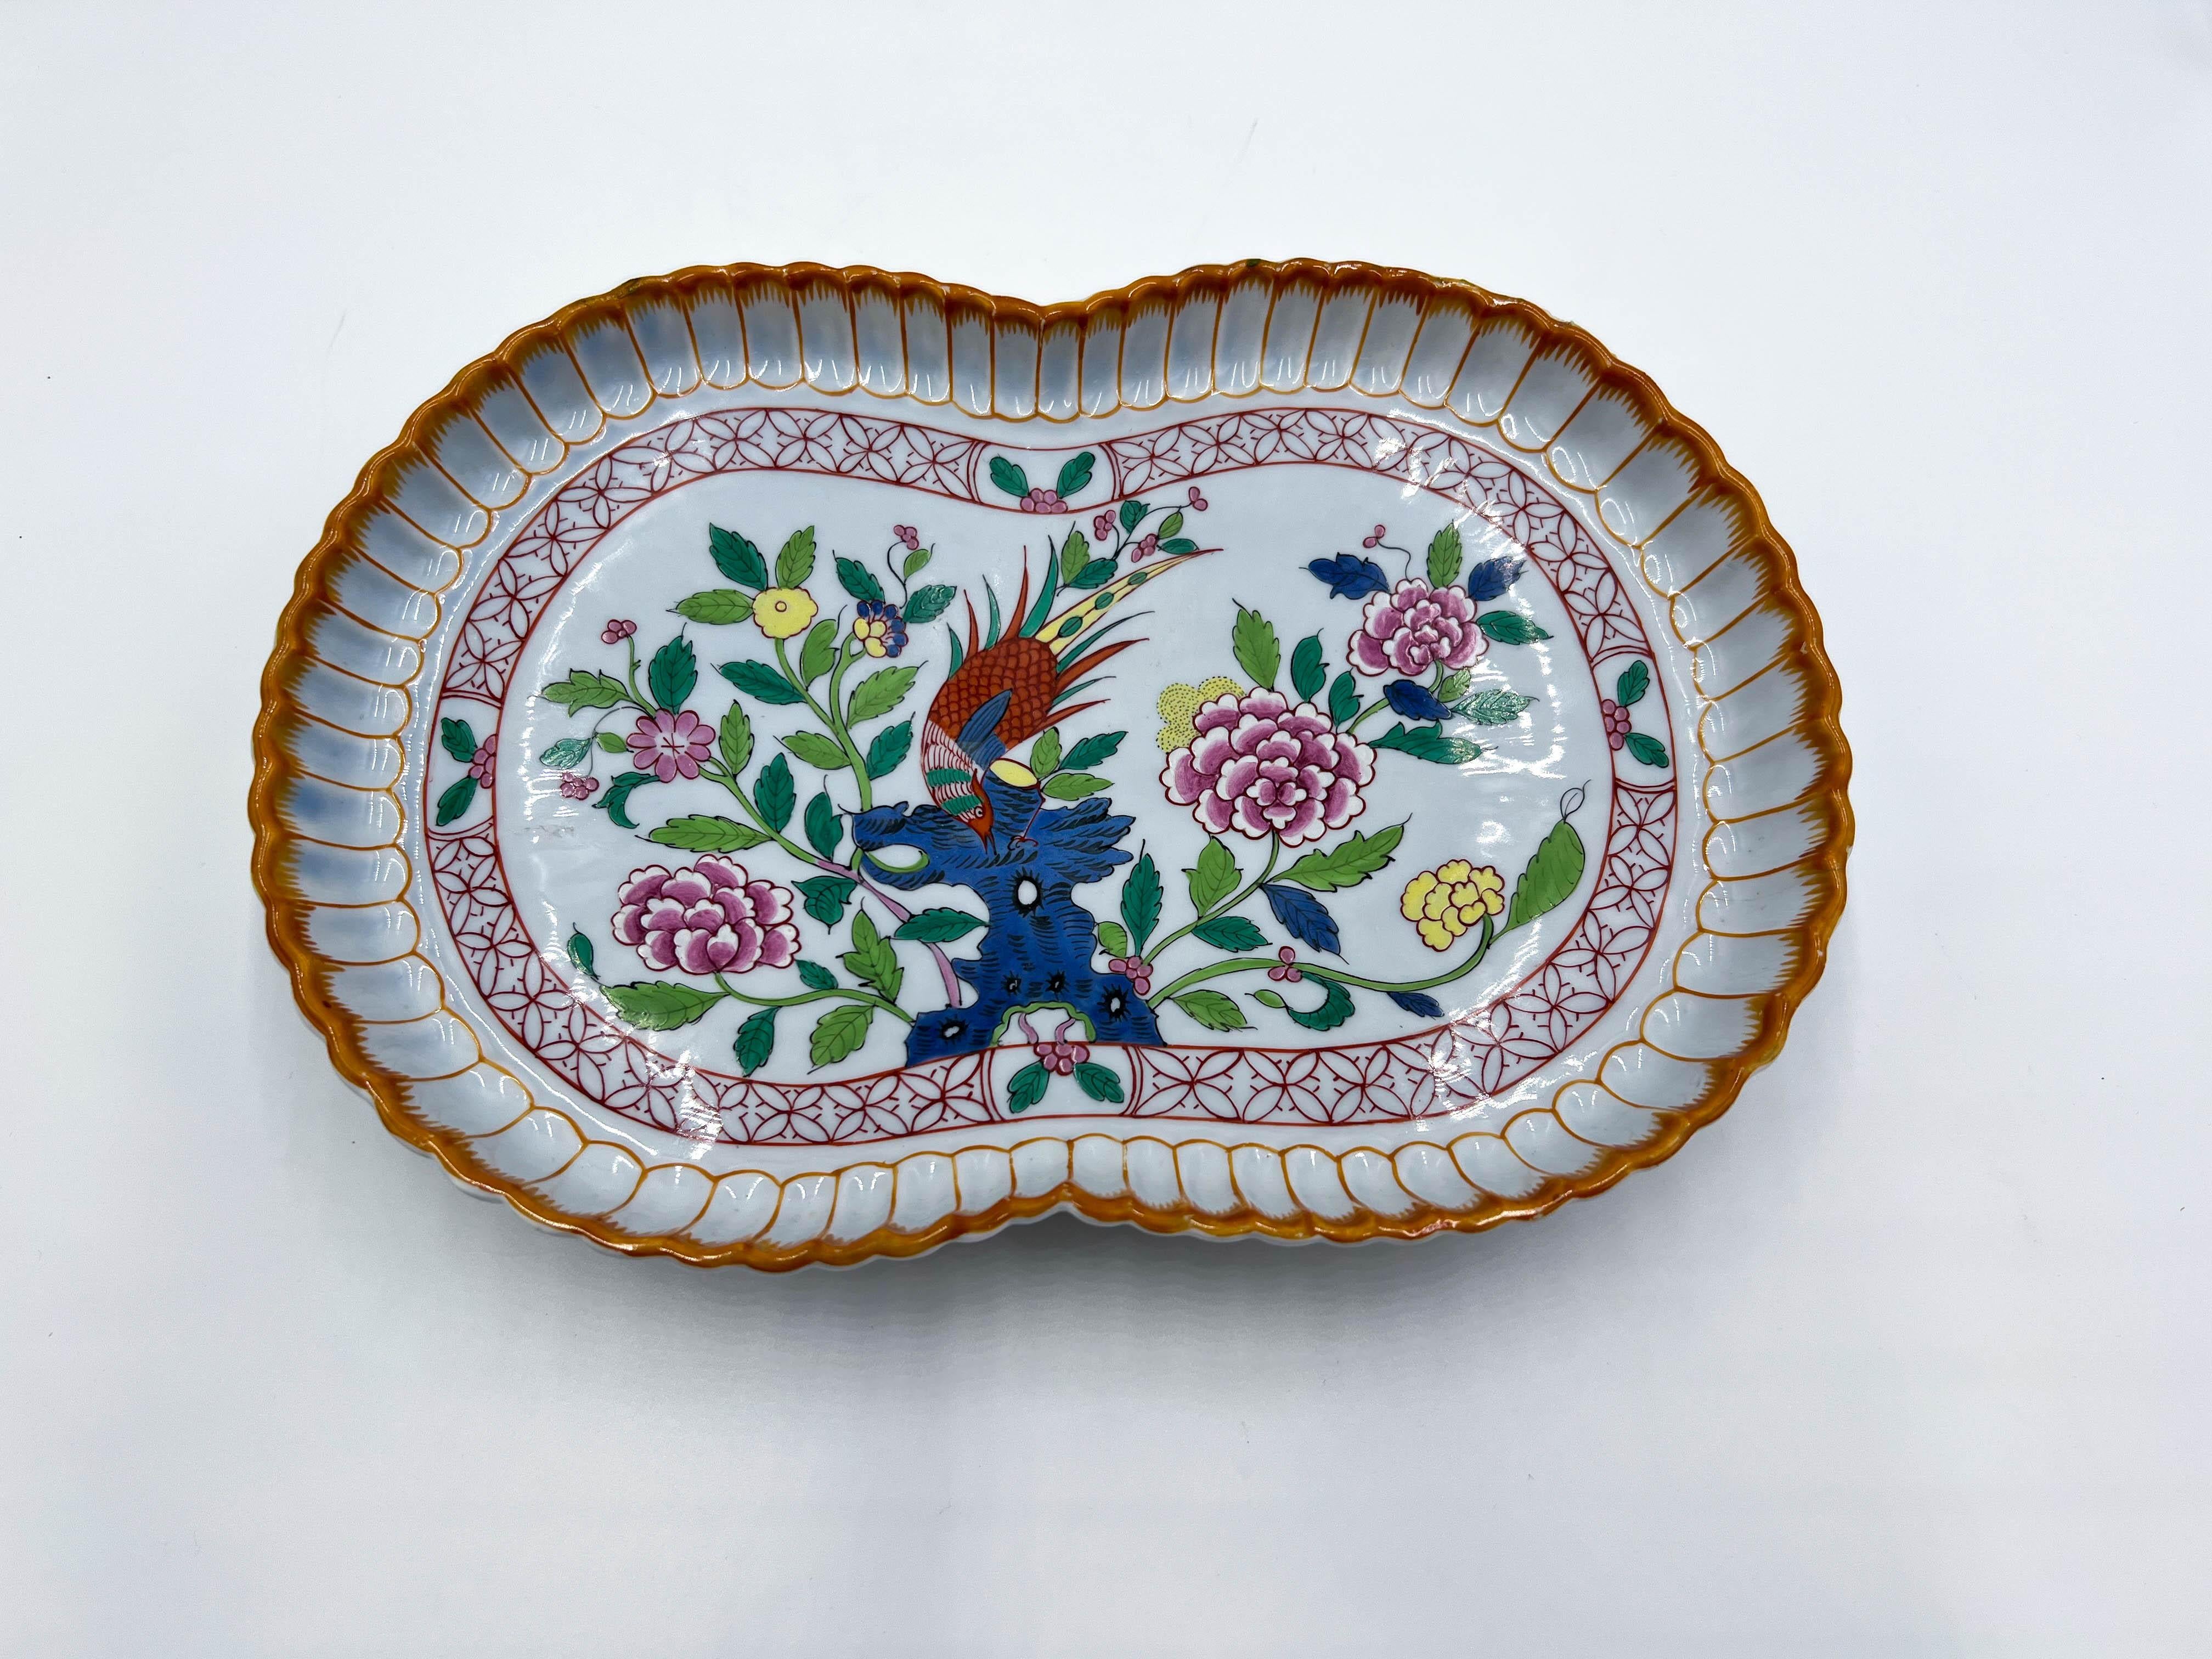  La porcelaine de Herend est réputée pour son artisanat exquis et ses motifs complexes. Cependant, cette pièce se distingue même parmi les remarquables créations de la marque.

Les couleurs vives et le motif floral et faisan créent une composition